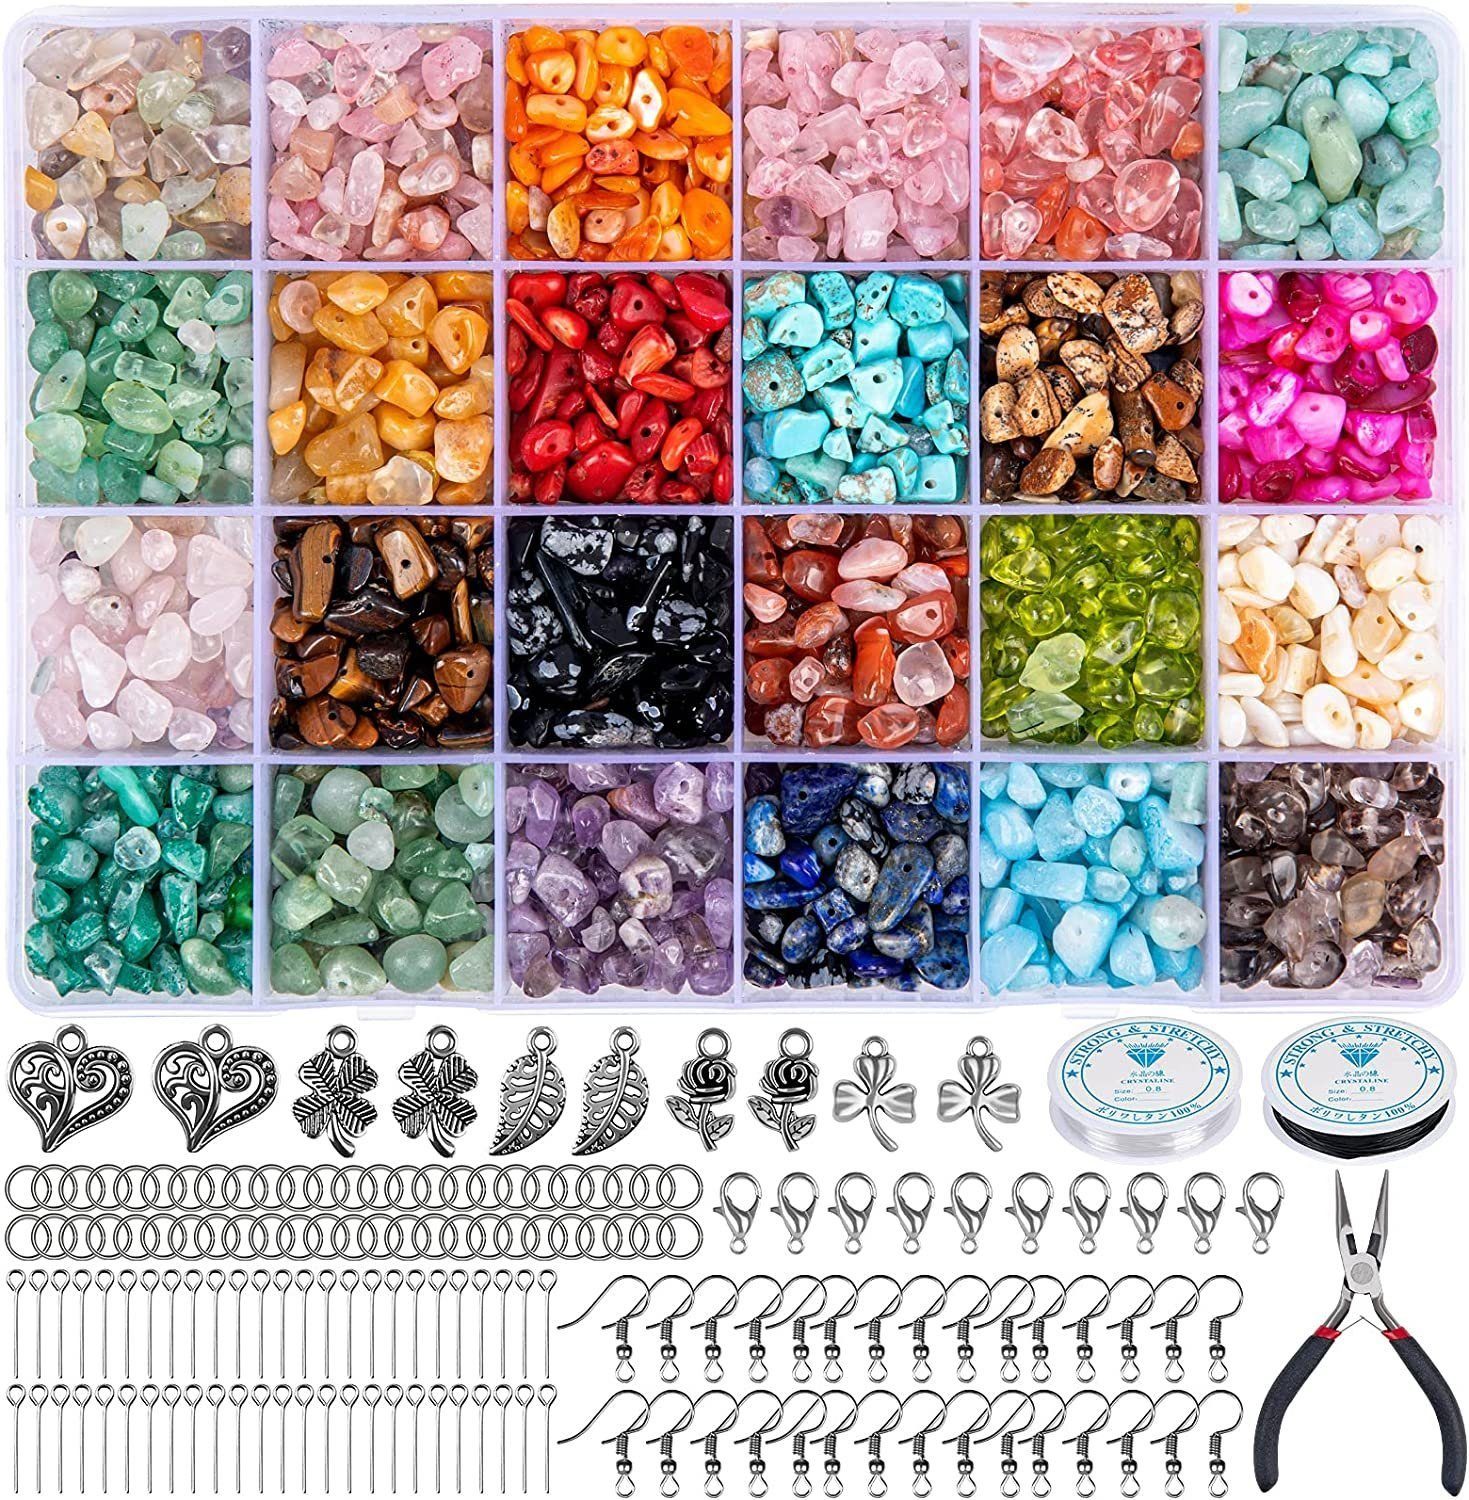 autolock Kette und Anhänger Set Schmuck Selber Machen Set, 24 Farben Natürliche Edelstein-Perlen